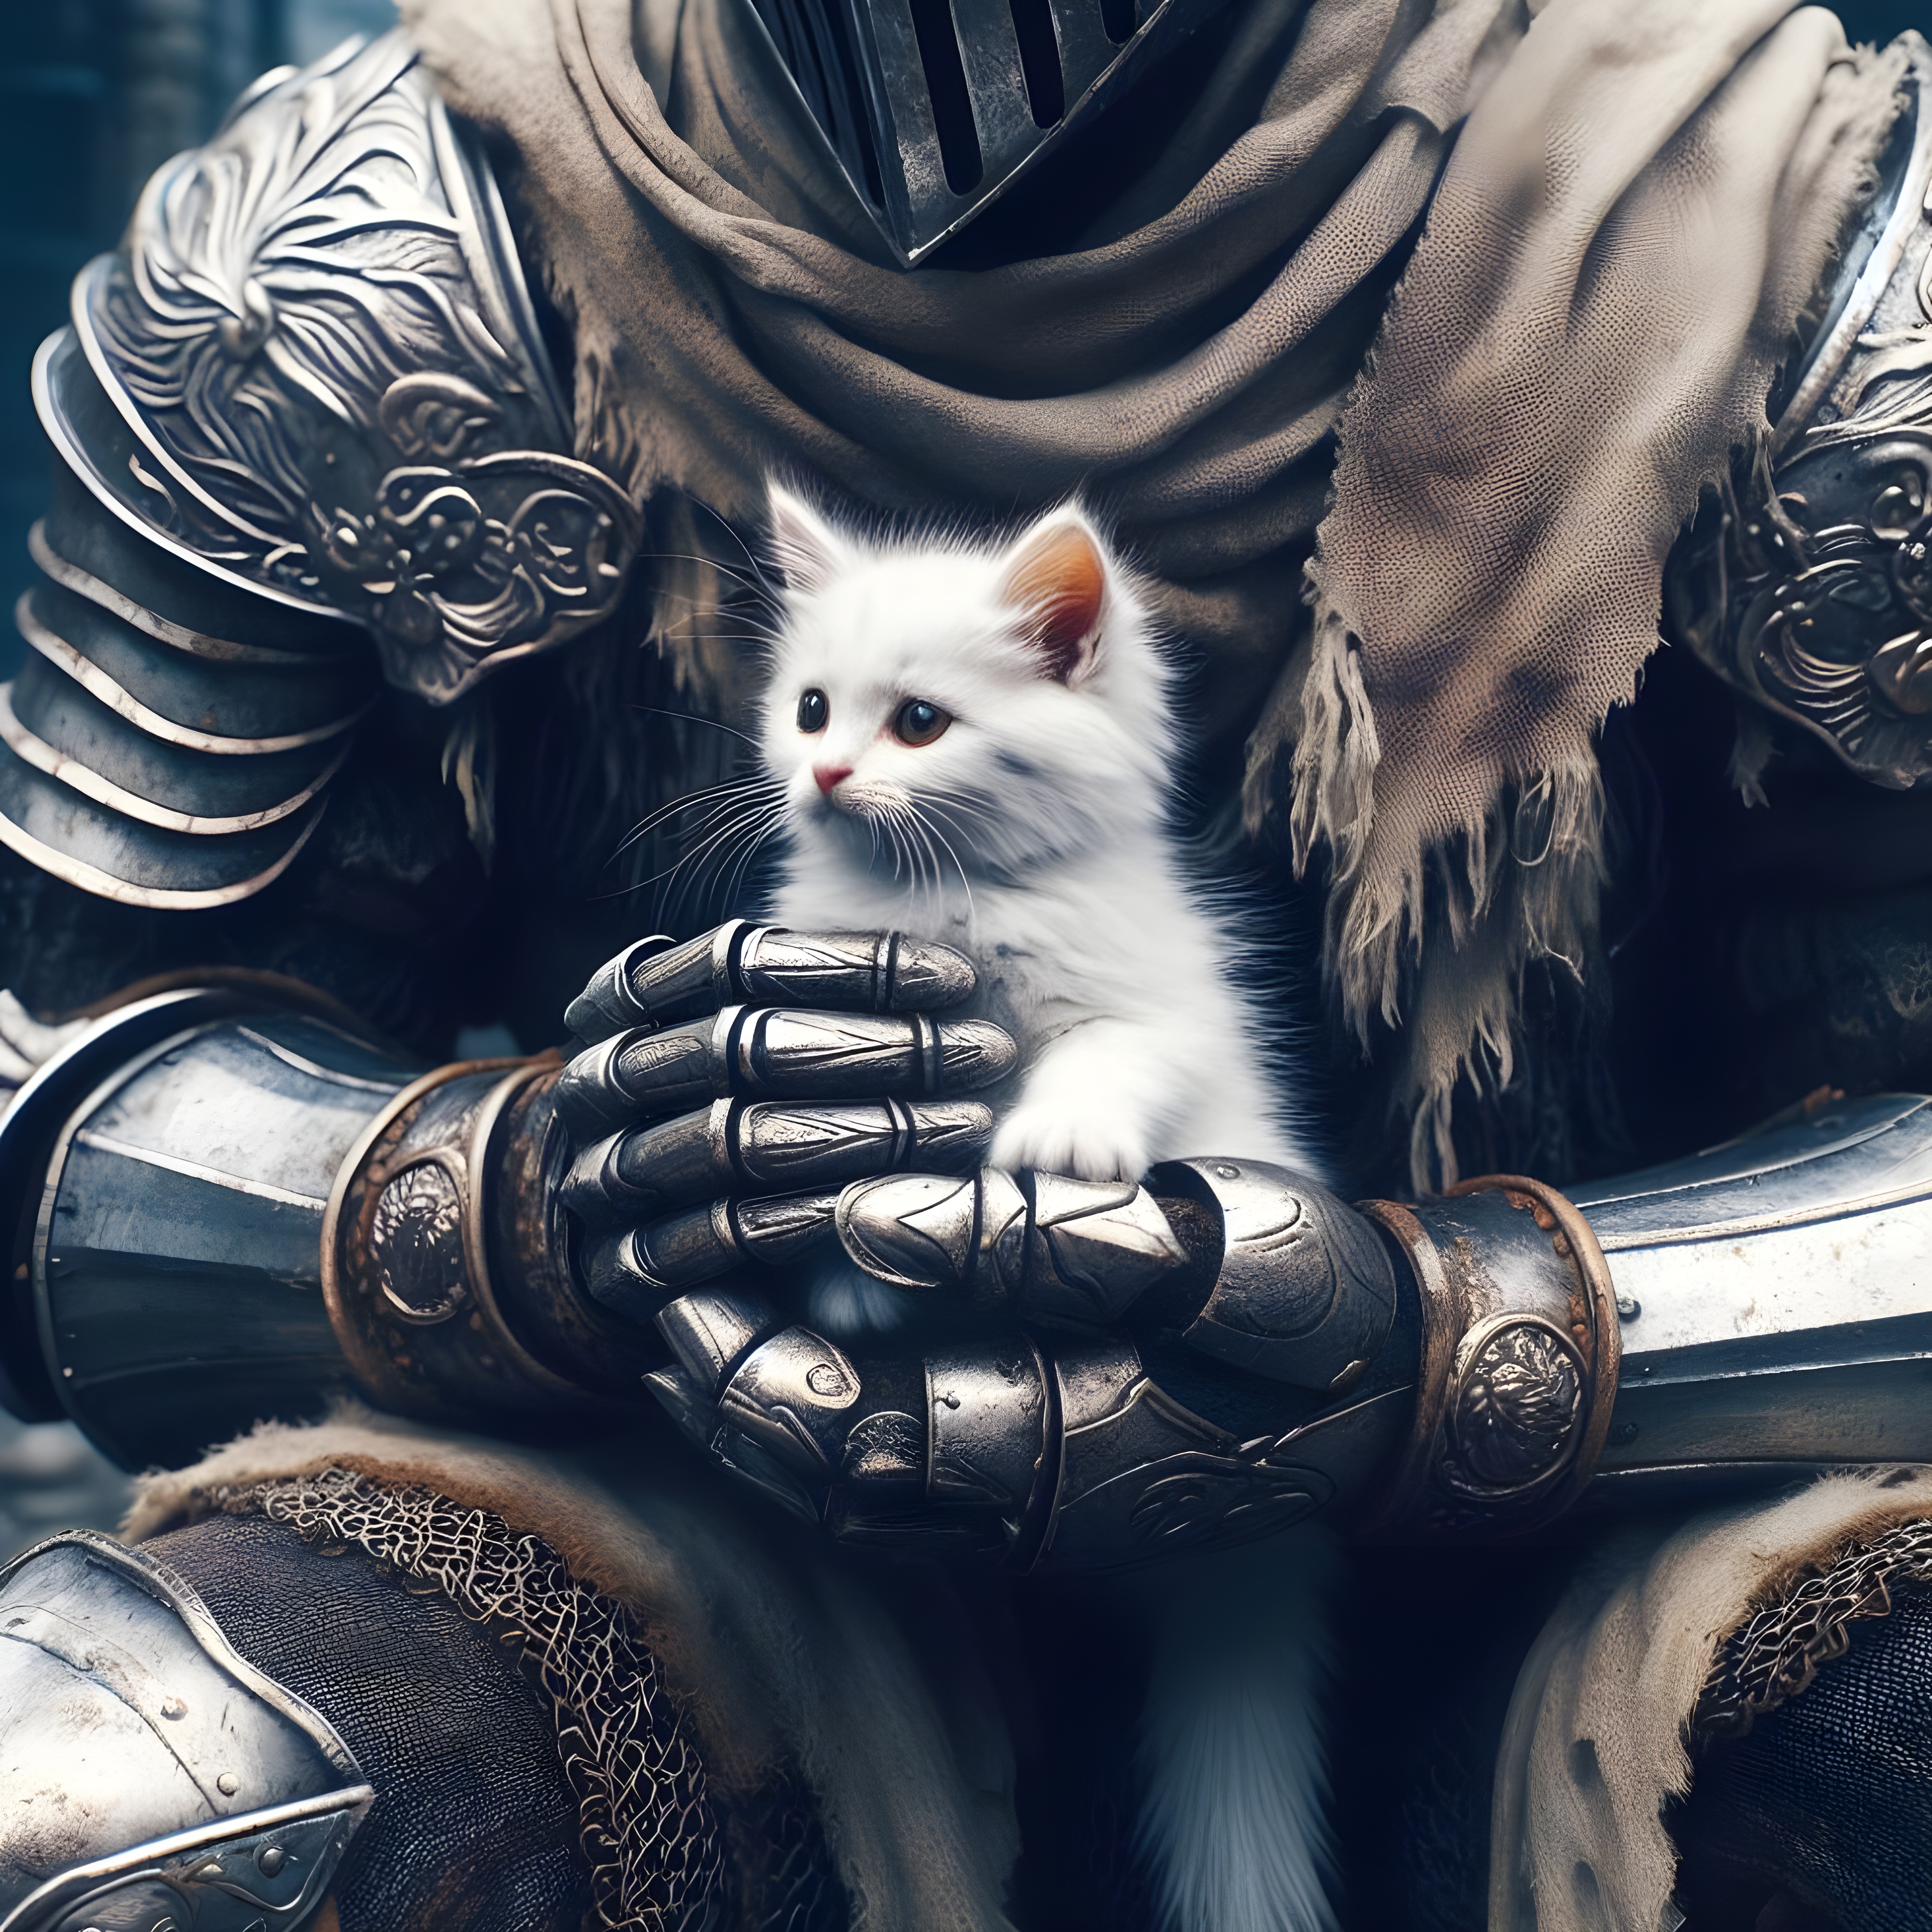 General 4000x4000 cats knight AI art digital art love kittens